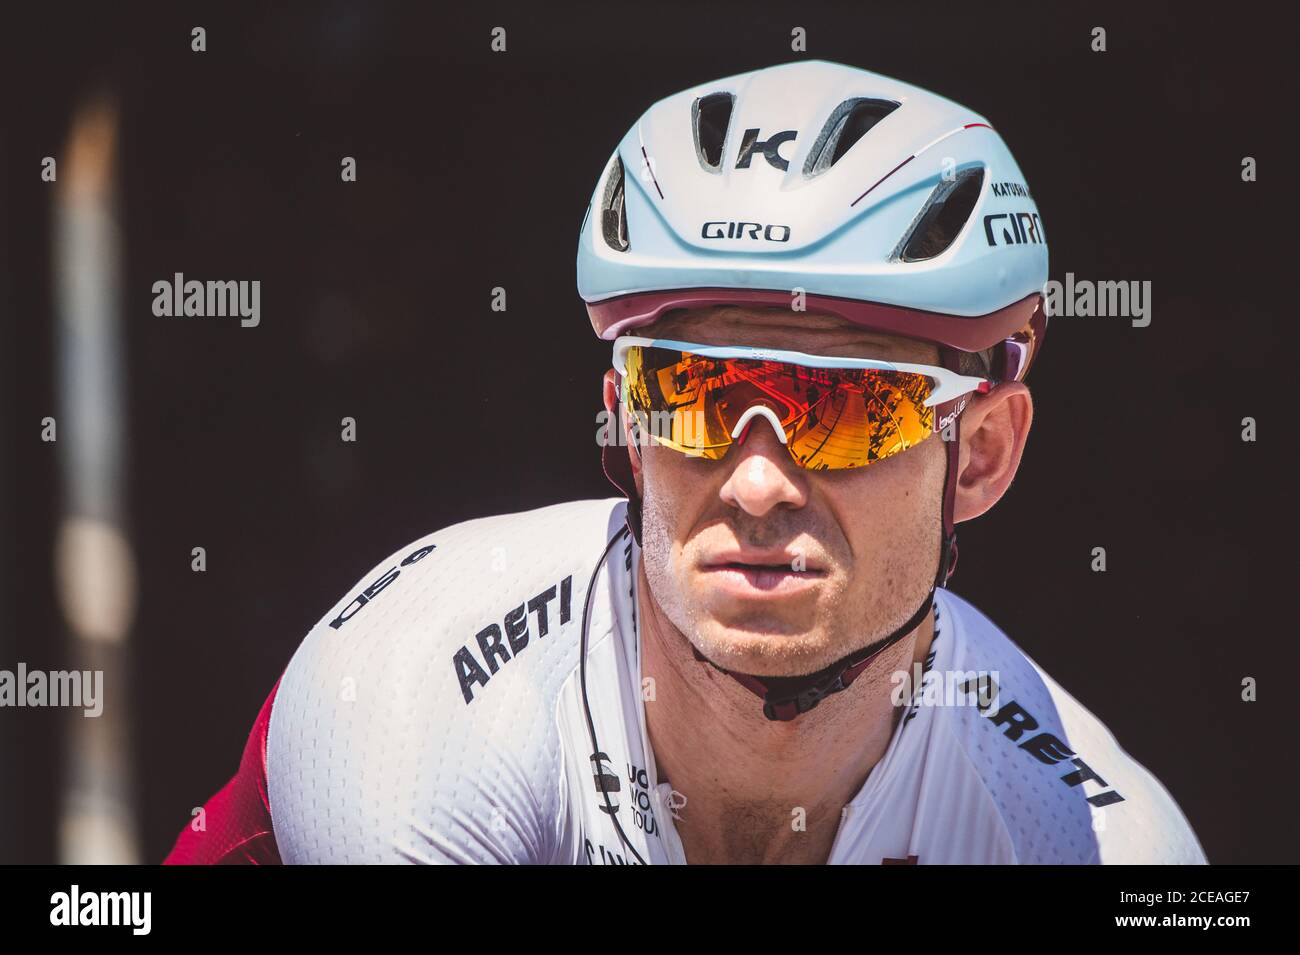 6 luglio 2017, Francia; Ciclismo, Tour de France 6° tappa: Alexander Kristoff (NOR) Foto Stock